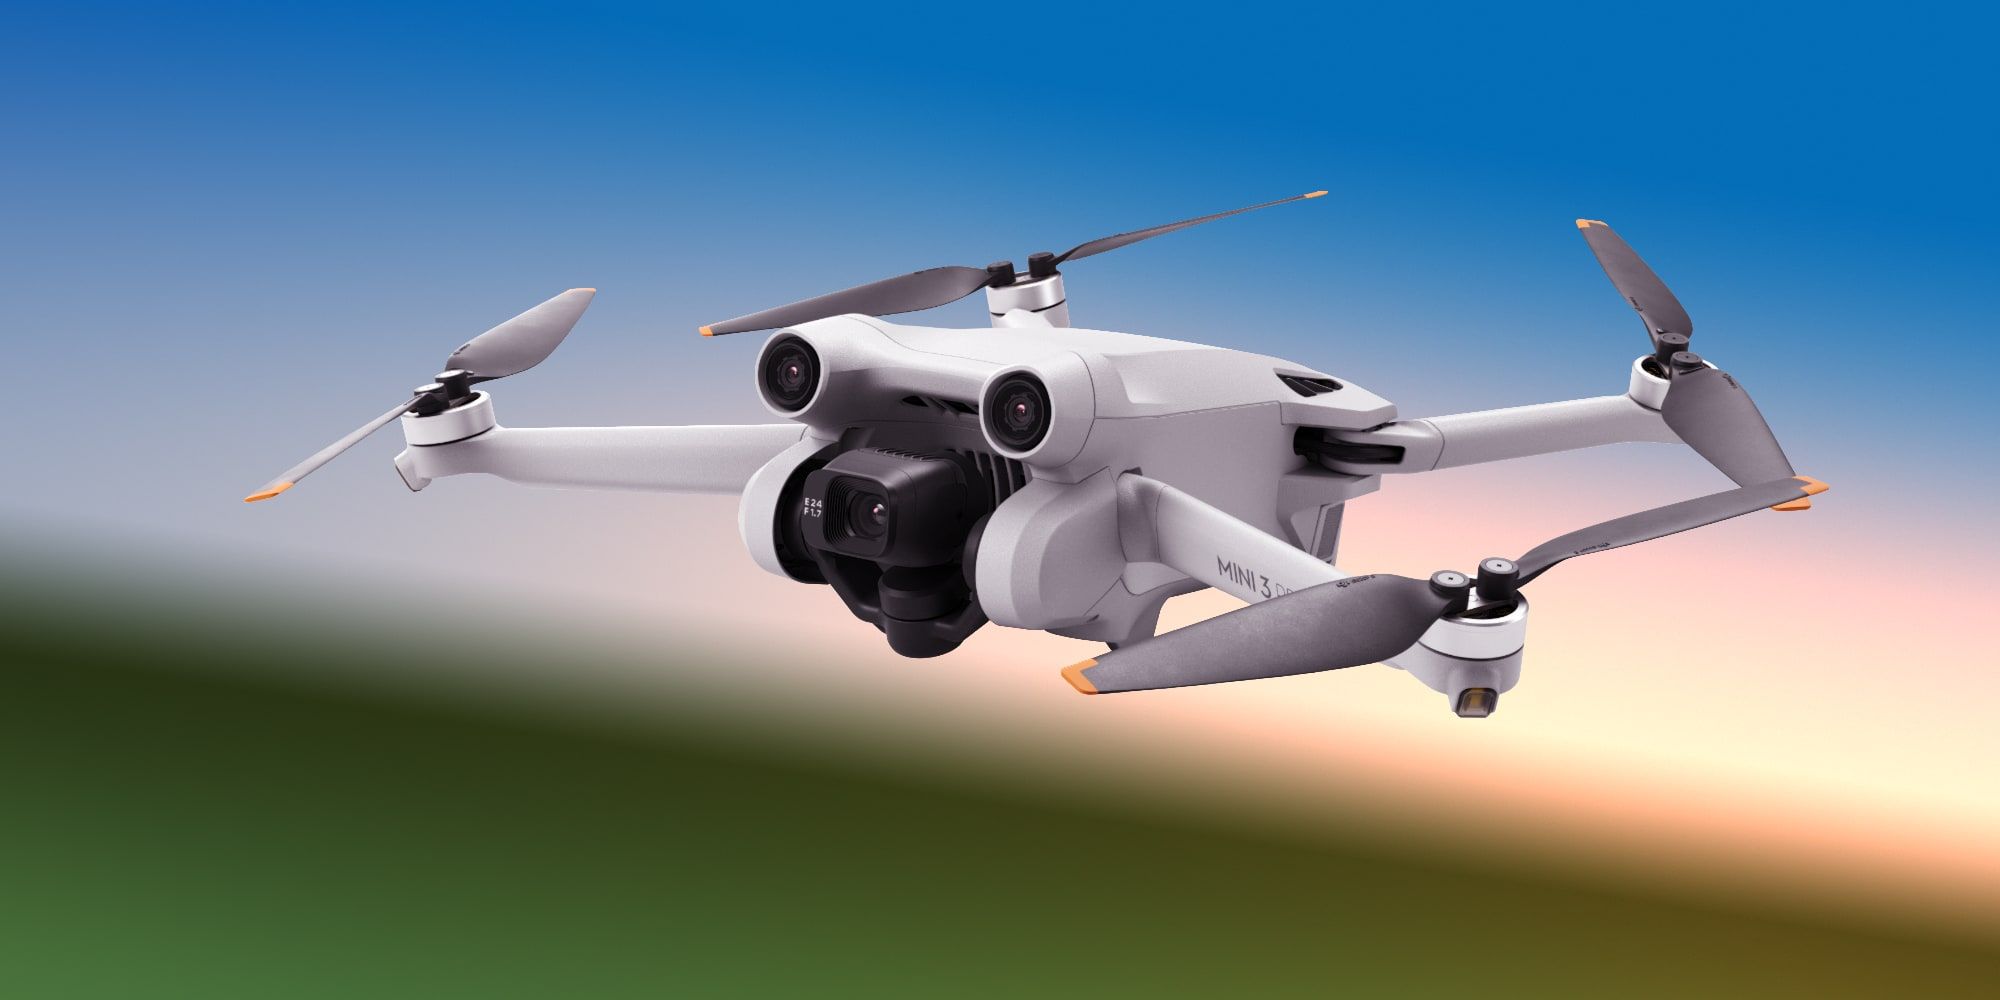 DJI acaba de lanzar un nuevo dron de 249 gramos con funciones profesionales